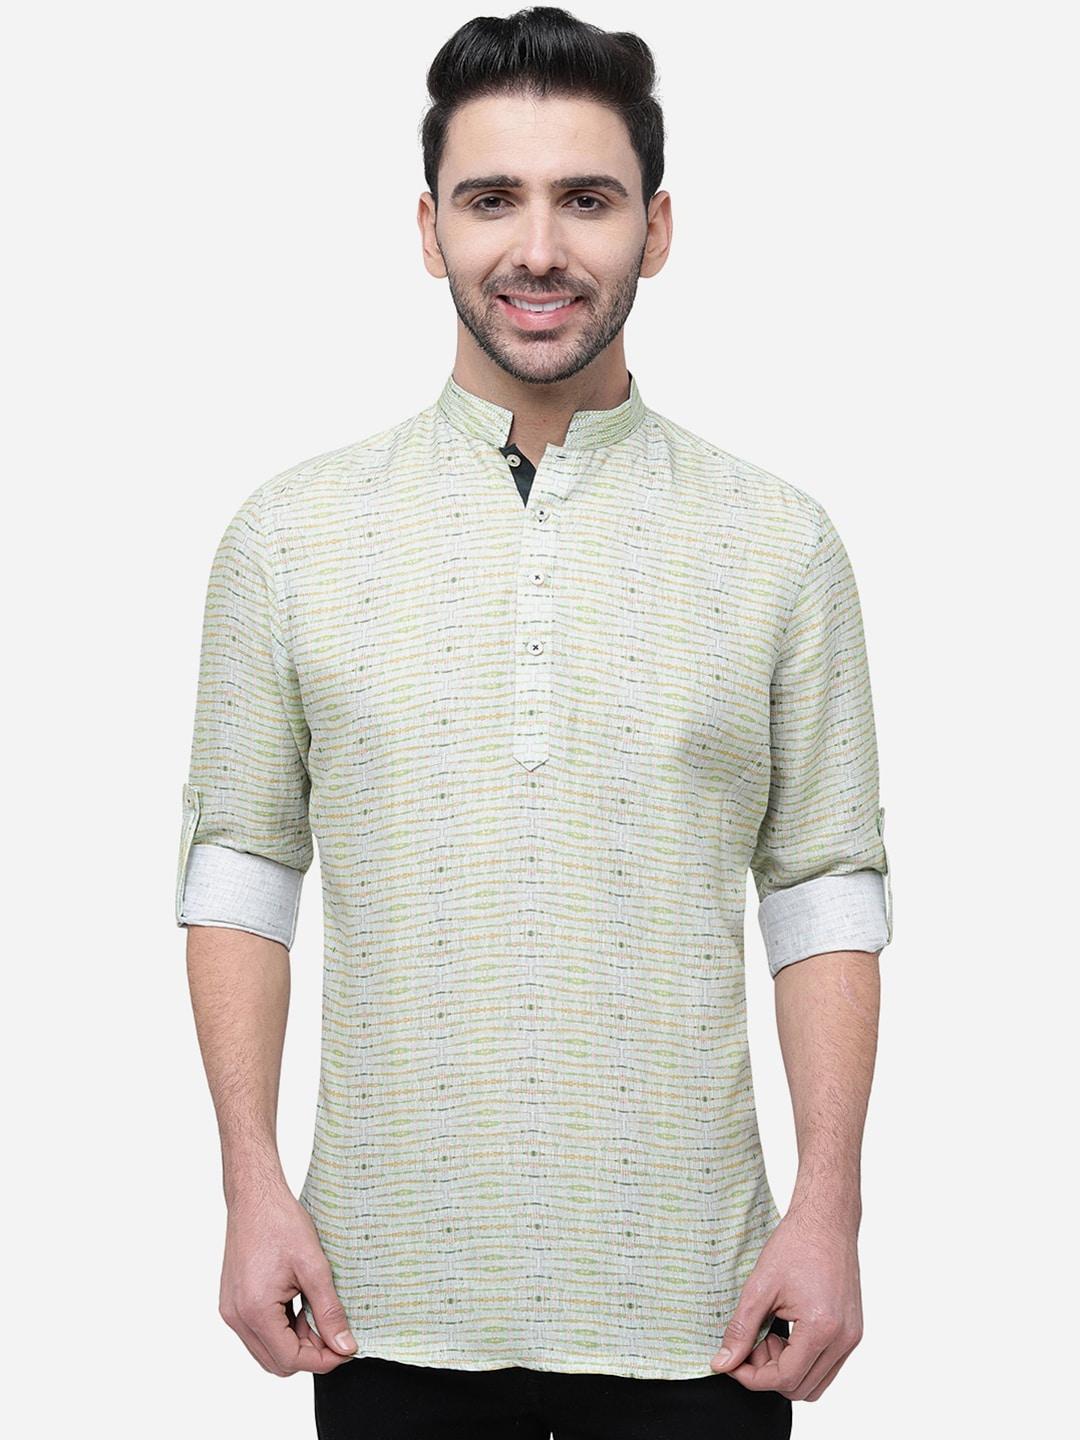 jb-studio-mandarin-collar-printed-slim-fit-casual-shirt